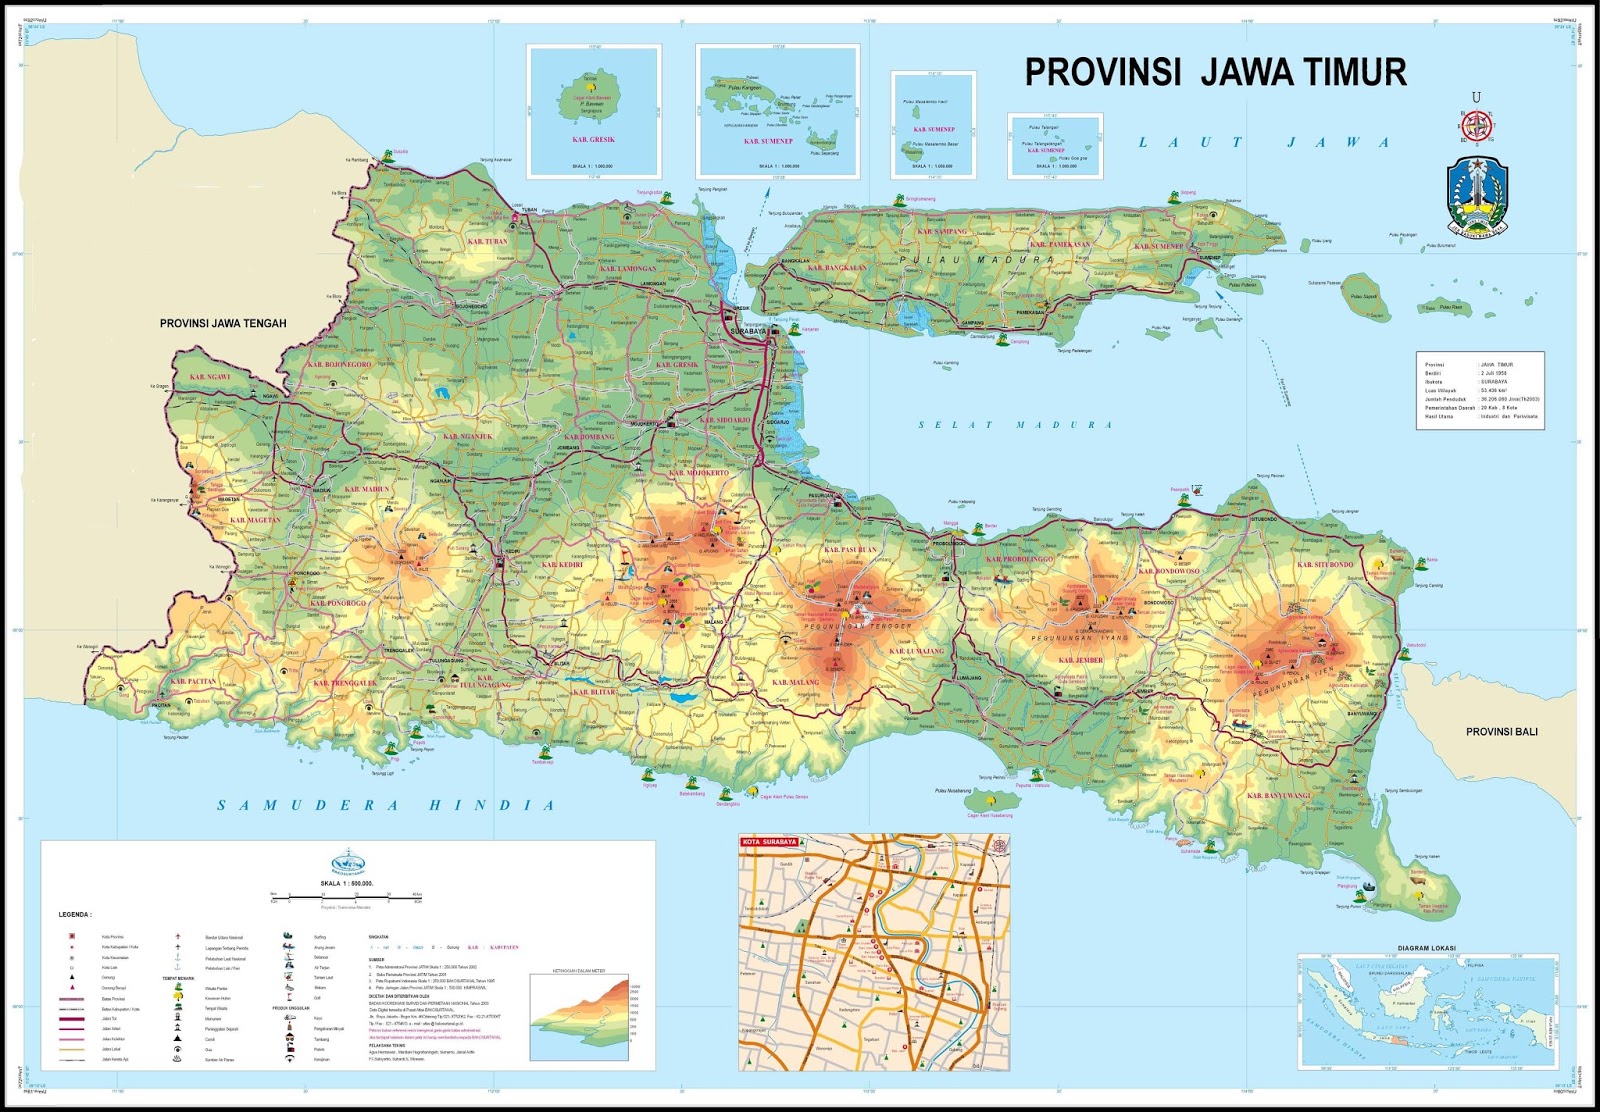 Peta Jawa Timur Lengkap Dengan Daftar 29 Nama Kabupaten dan 9 Kota  Kopiireng.com